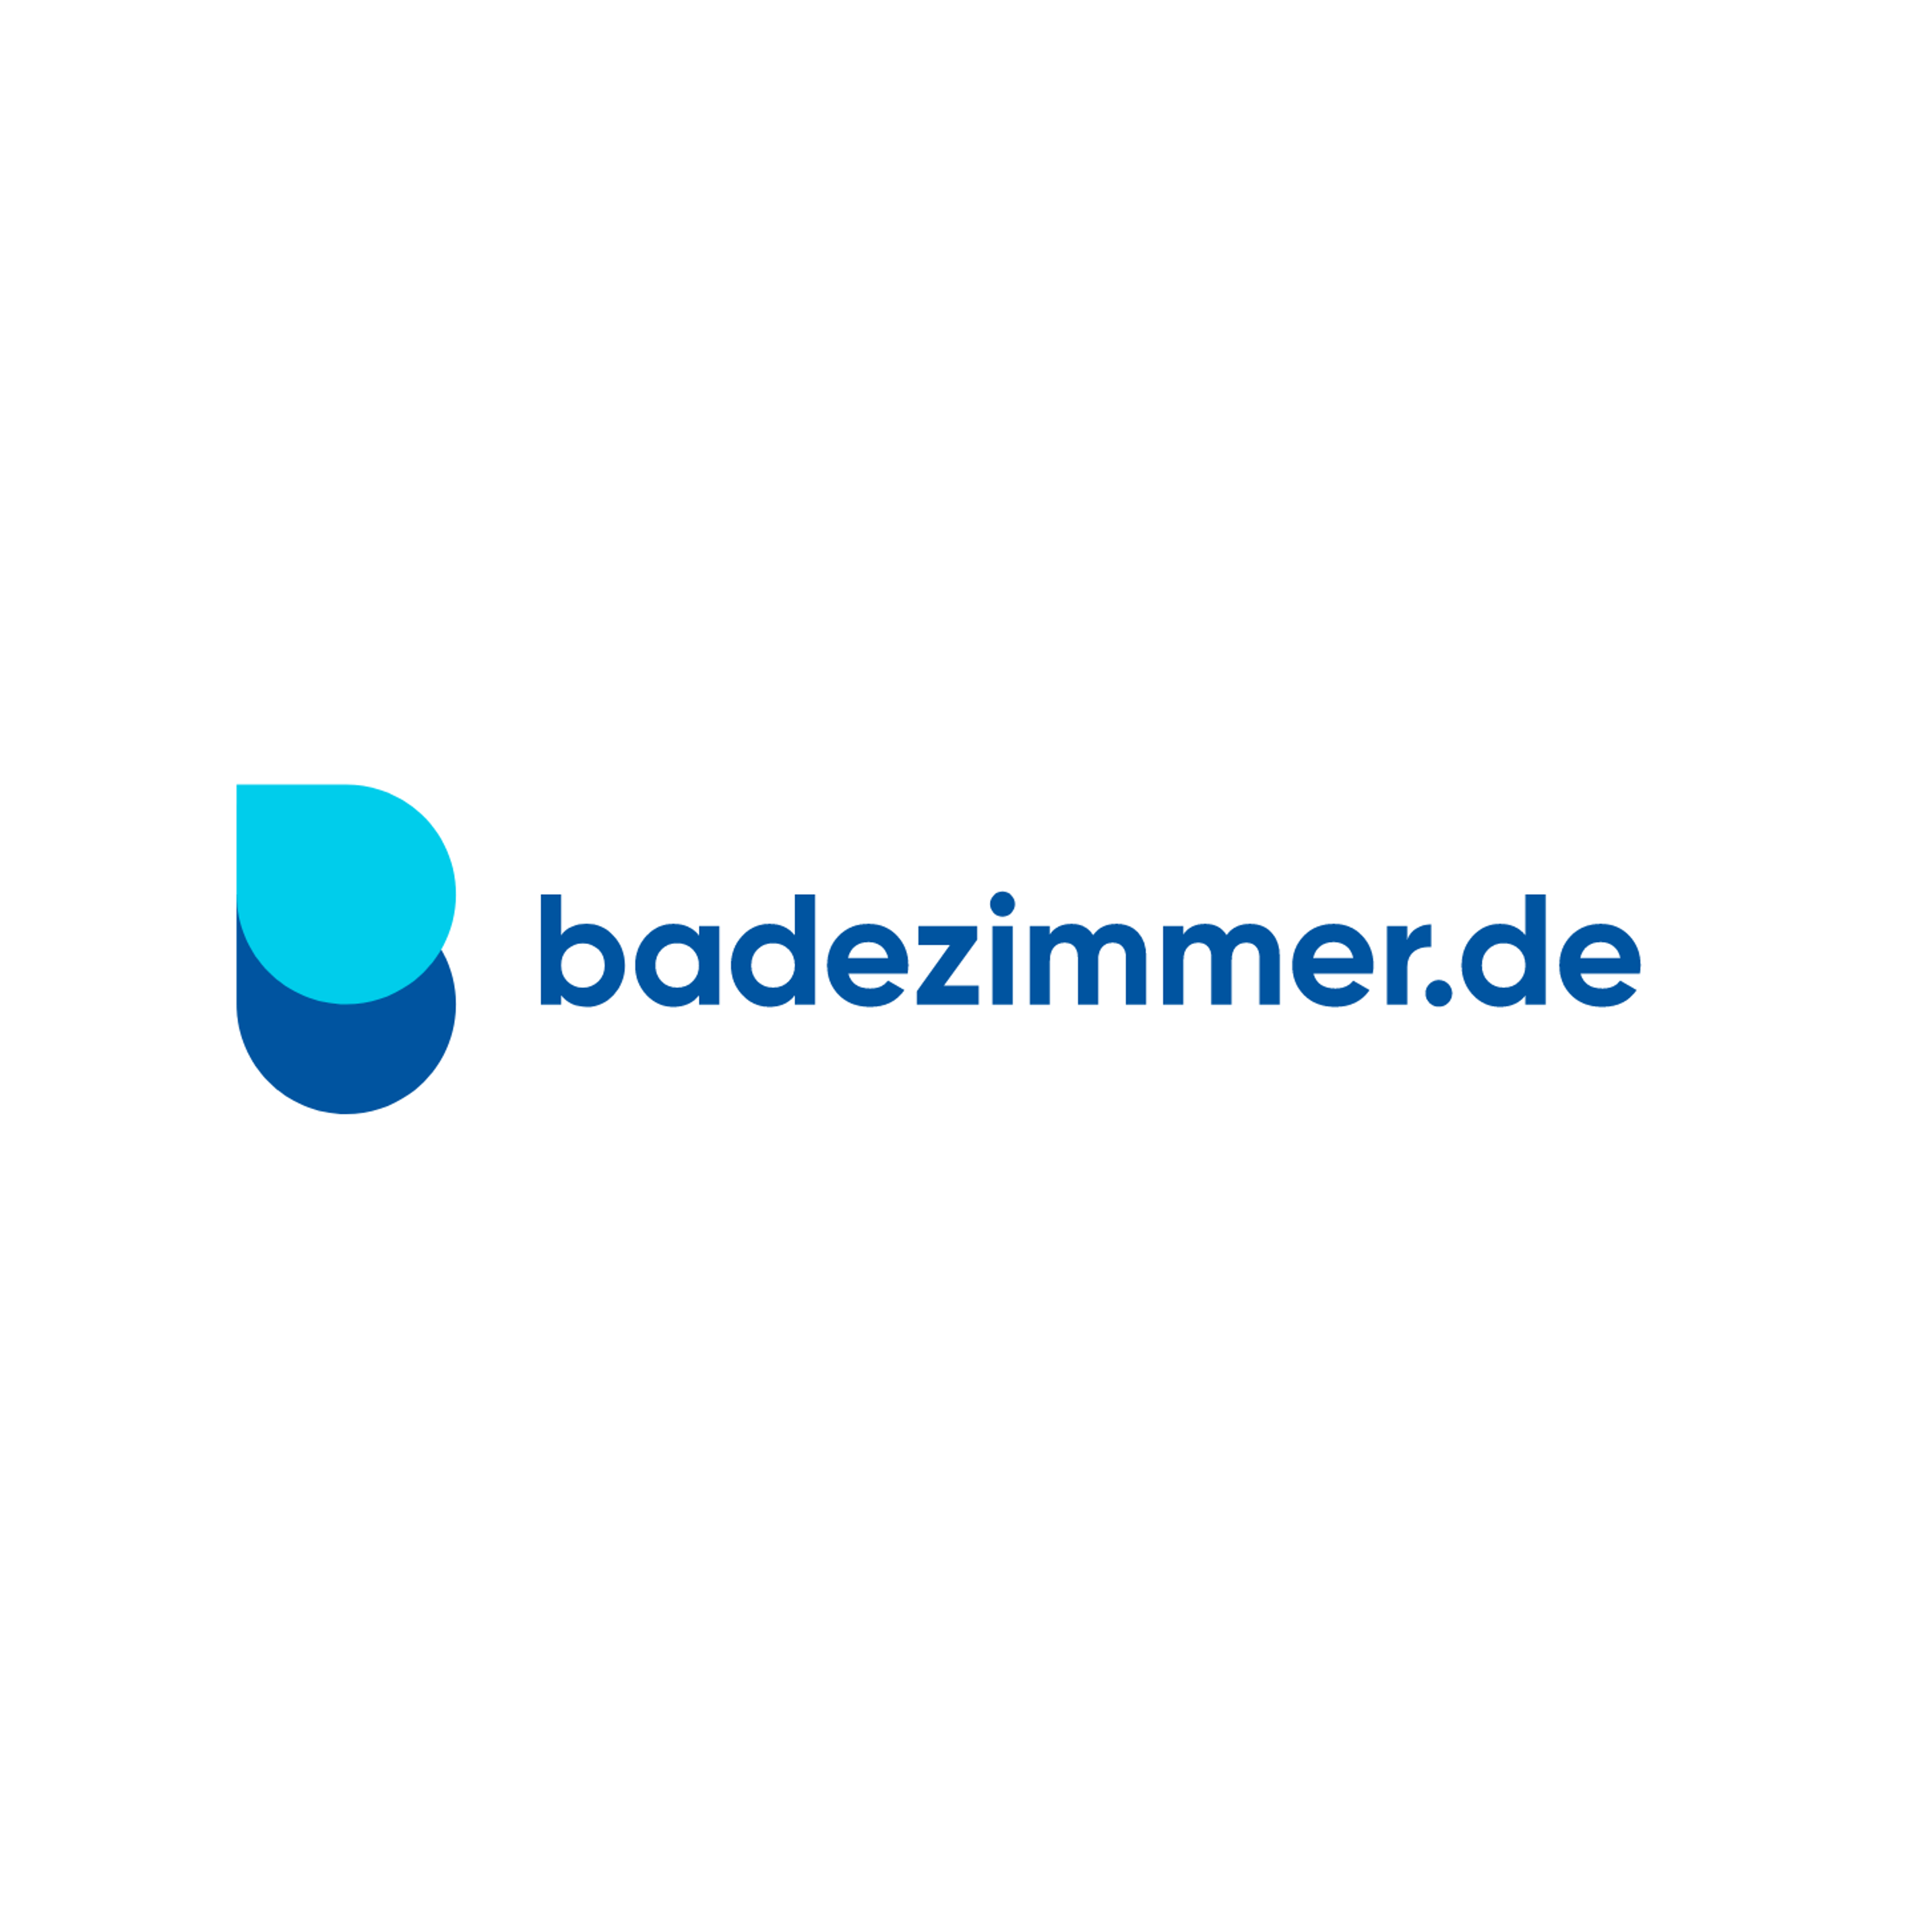 badezimmer.de Badausstellung Osnabrück - ELMER Logo